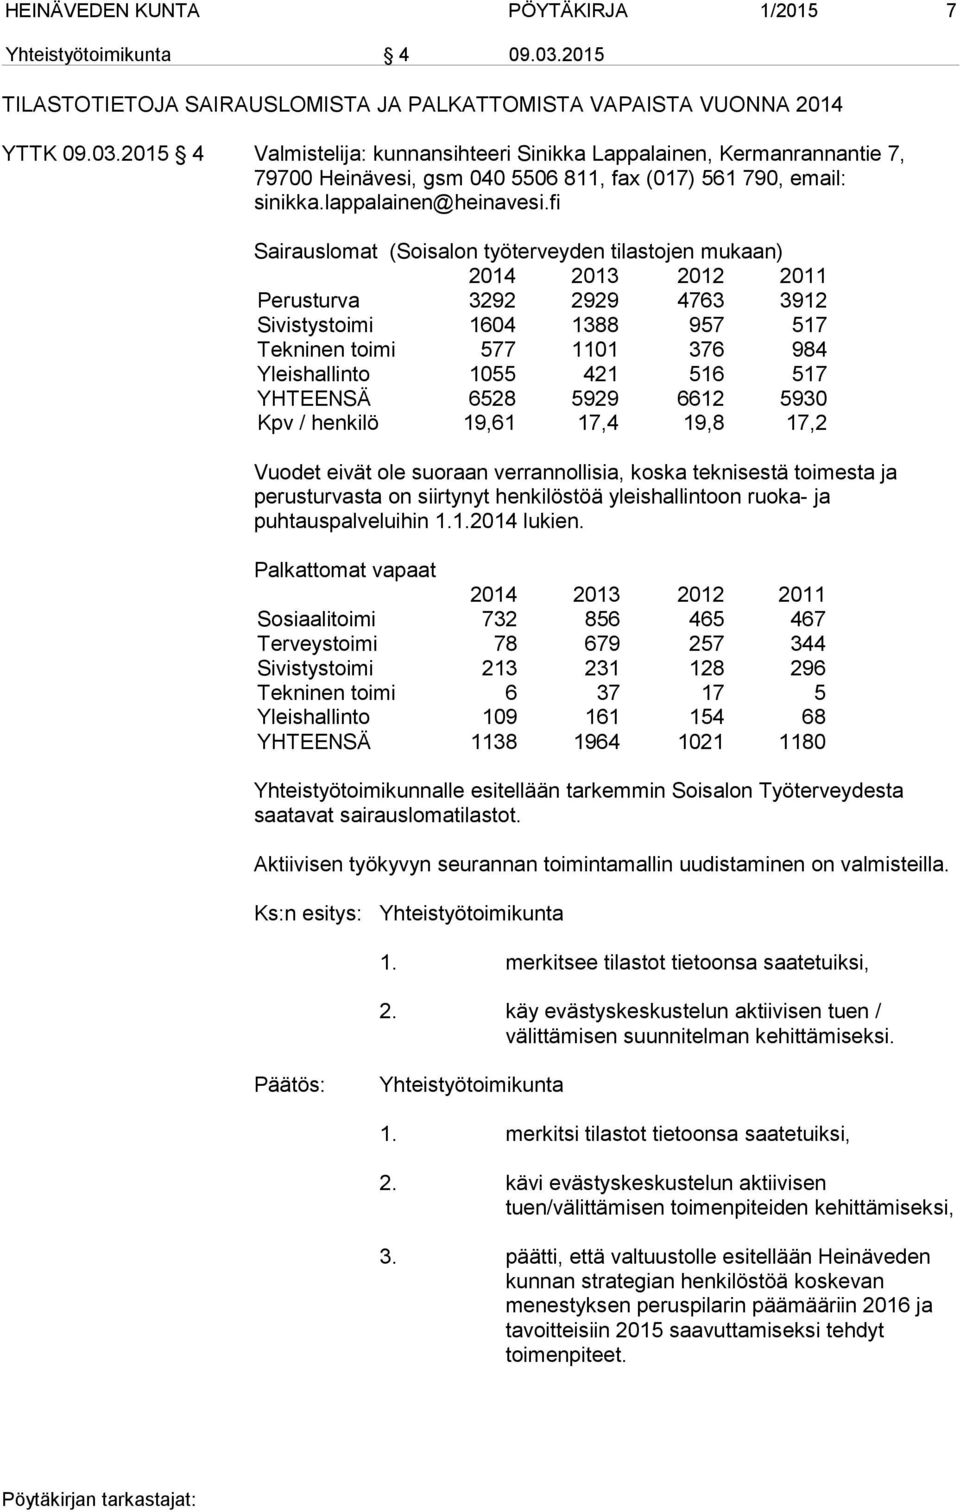 2015 4 Valmistelija: kunnansihteeri Sinikka Lappalainen, Kermanrannantie 7, 79700 Heinävesi, gsm 040 5506 811, fax (017) 561 790, email: sinikka.lappalainen@heinavesi.